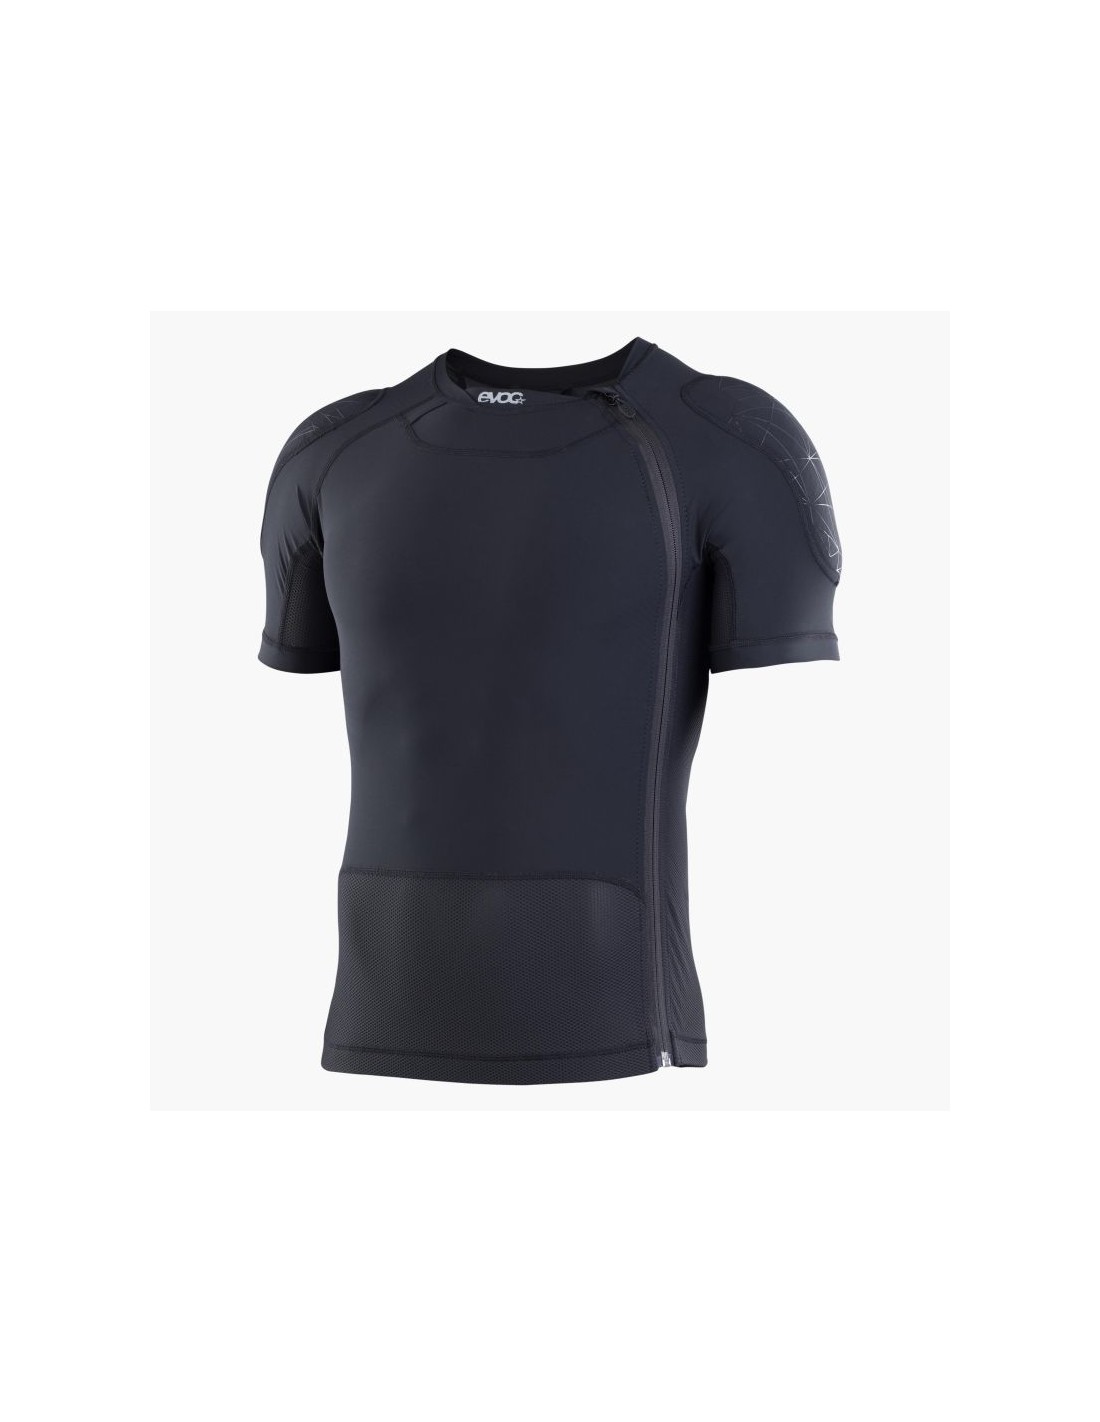 Evoc Protector Shirt Zip, Steißbeinpolsterung, kurzes Protektor-Shirt, waschbar, mit Rückenprotektor, Schulterprotektor, schwarz Protektorgröße - M, von Evoc